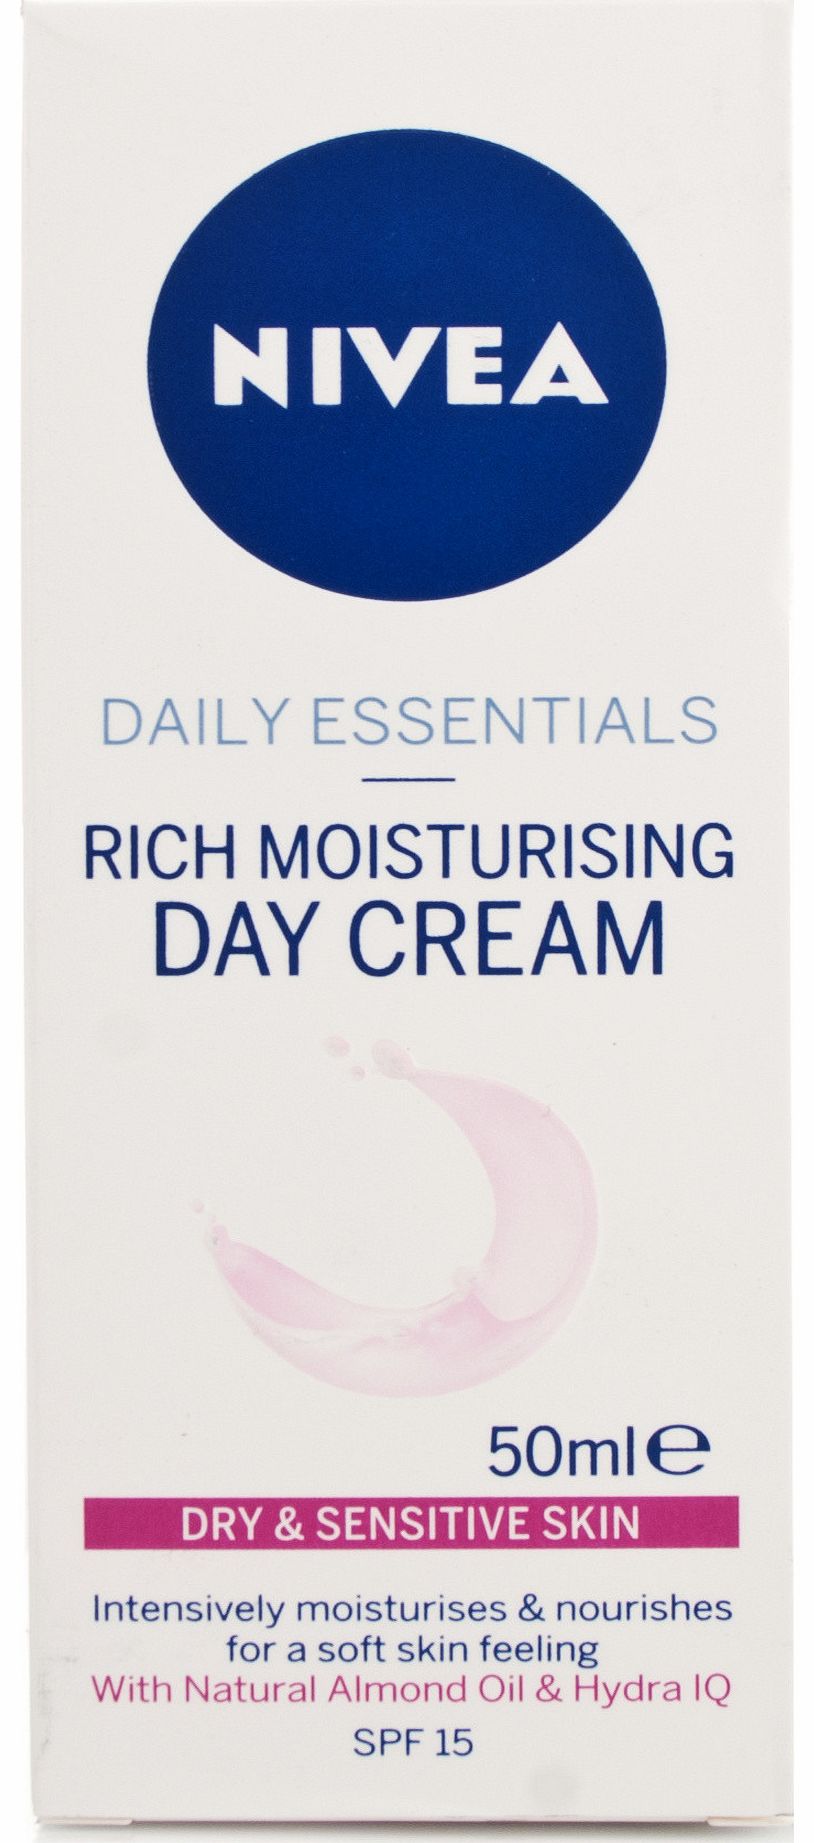 Daily Essentials Rich Moisturising Day Cream